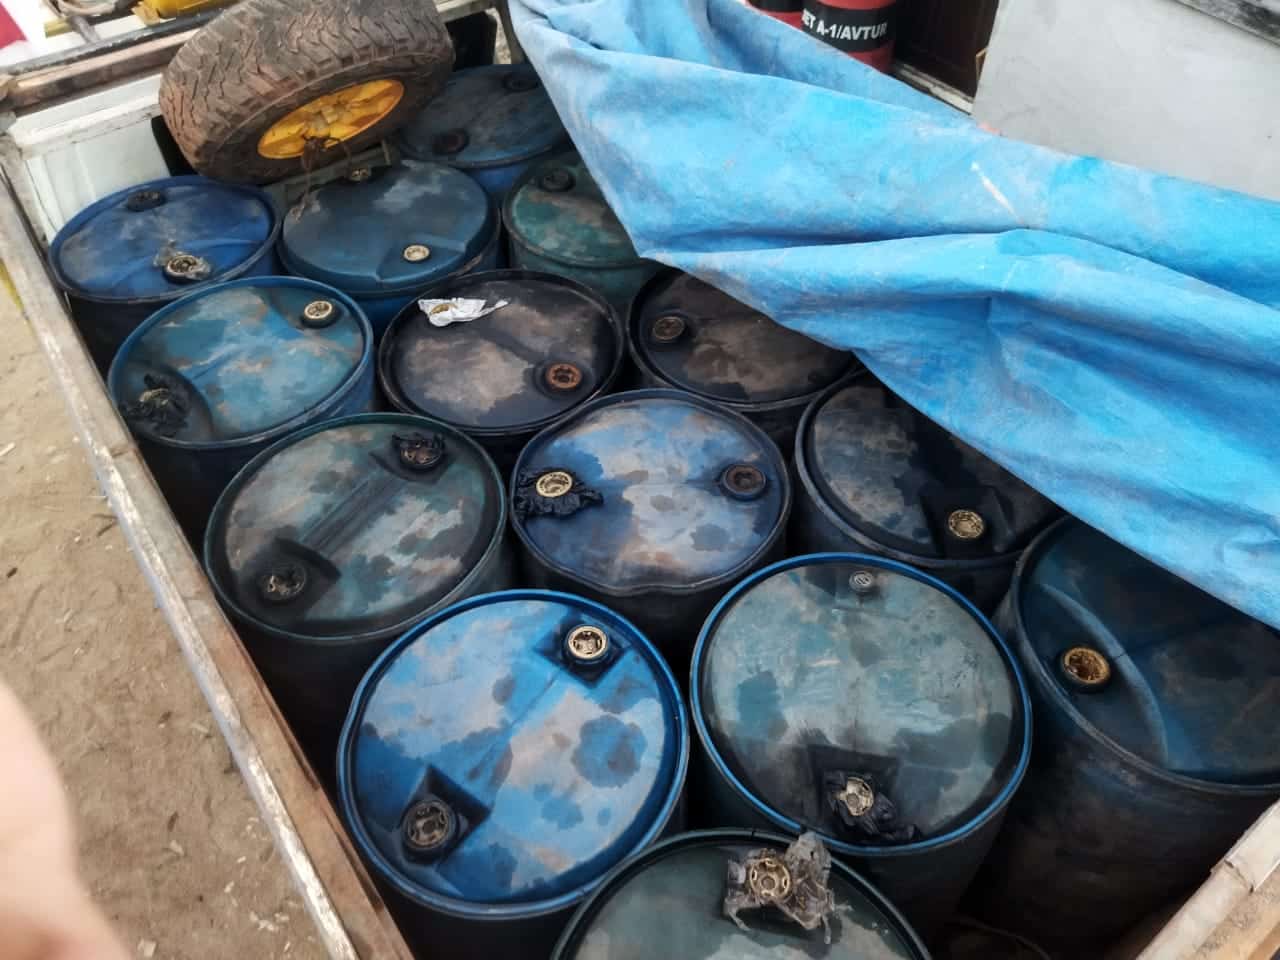 Barang bukti 12 drum minyak jenis solar atau sekitar 2.400 liter yang berhasil diamankan oleh jajaran Satreskrim Polres Ketapang. (Foto: Istimewa)